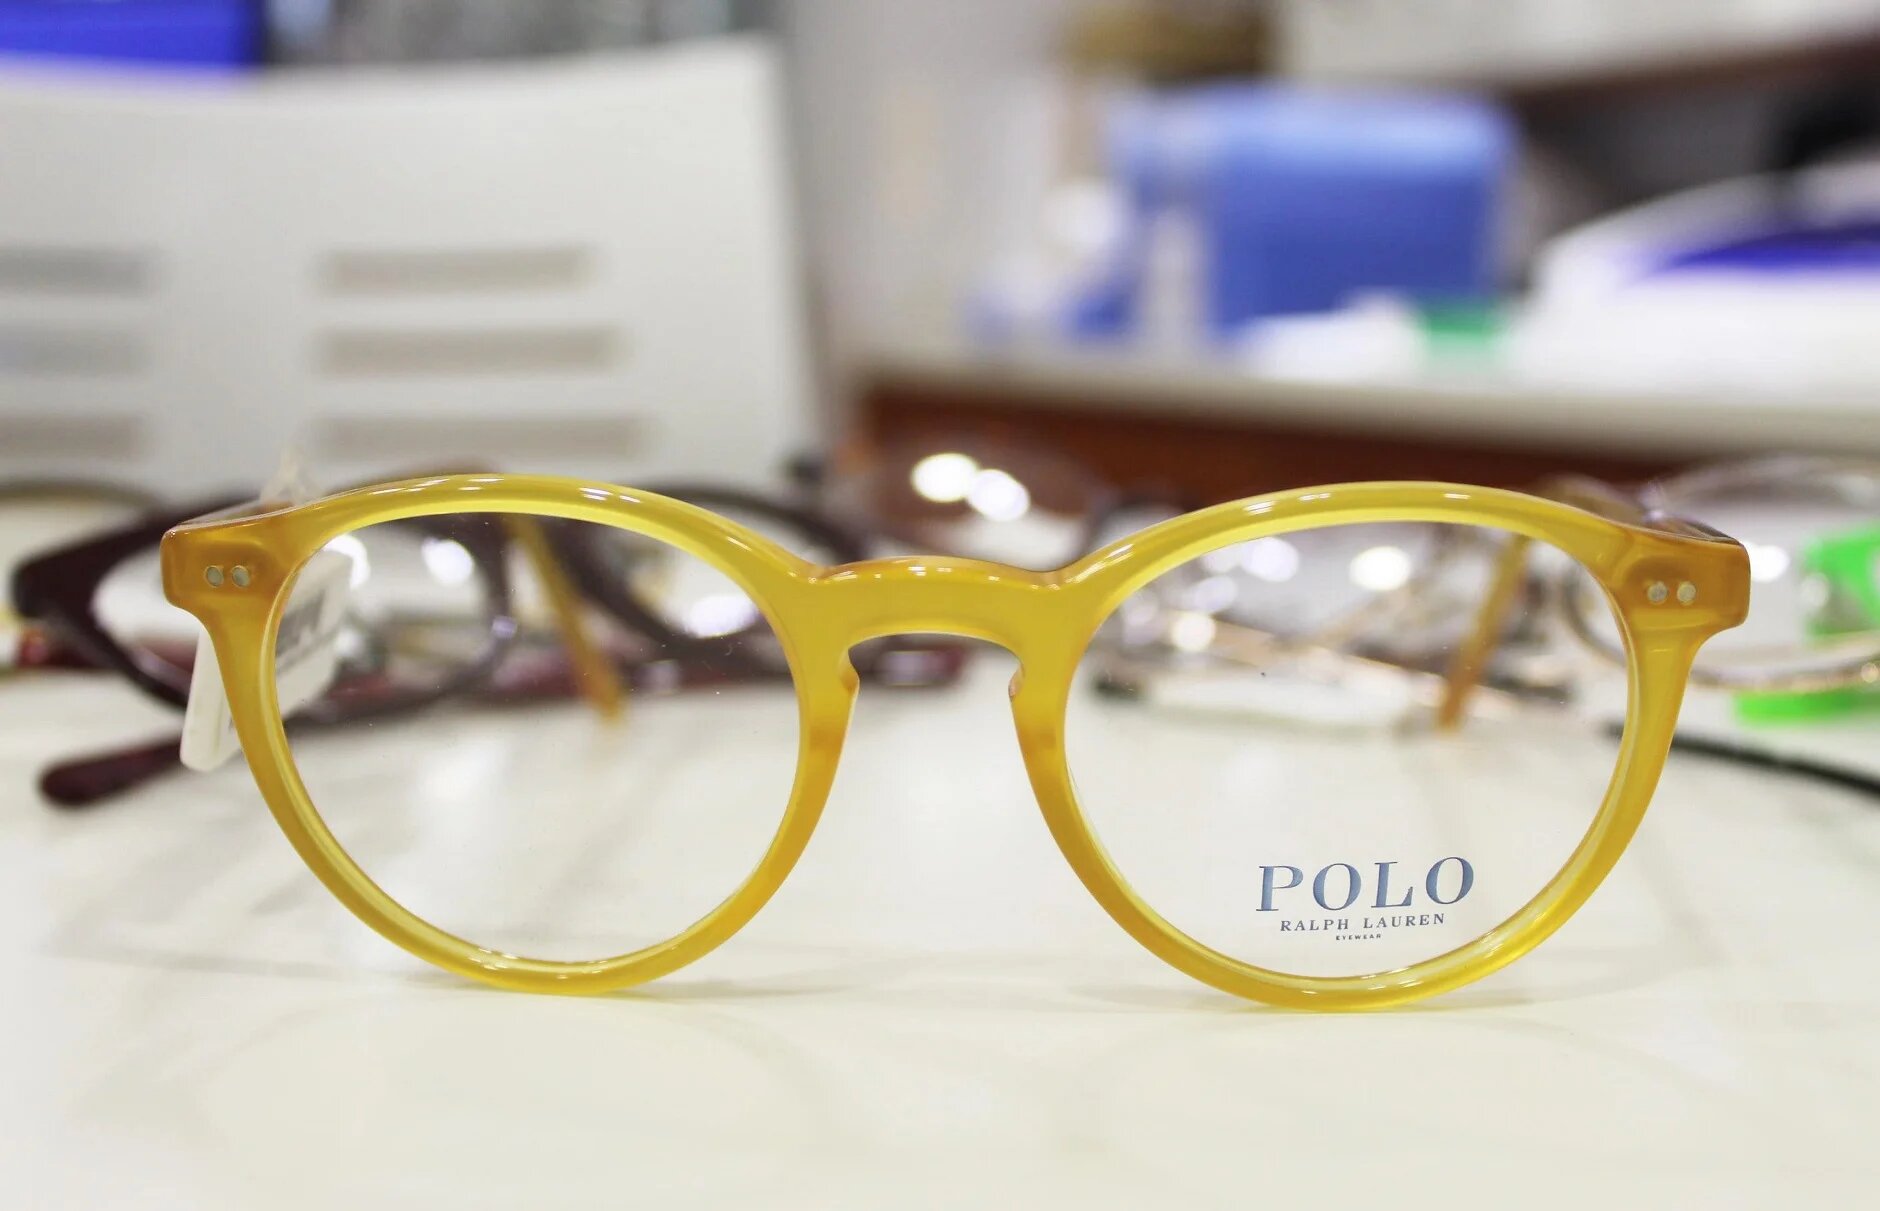 Gafas Polo Ralph Lauren